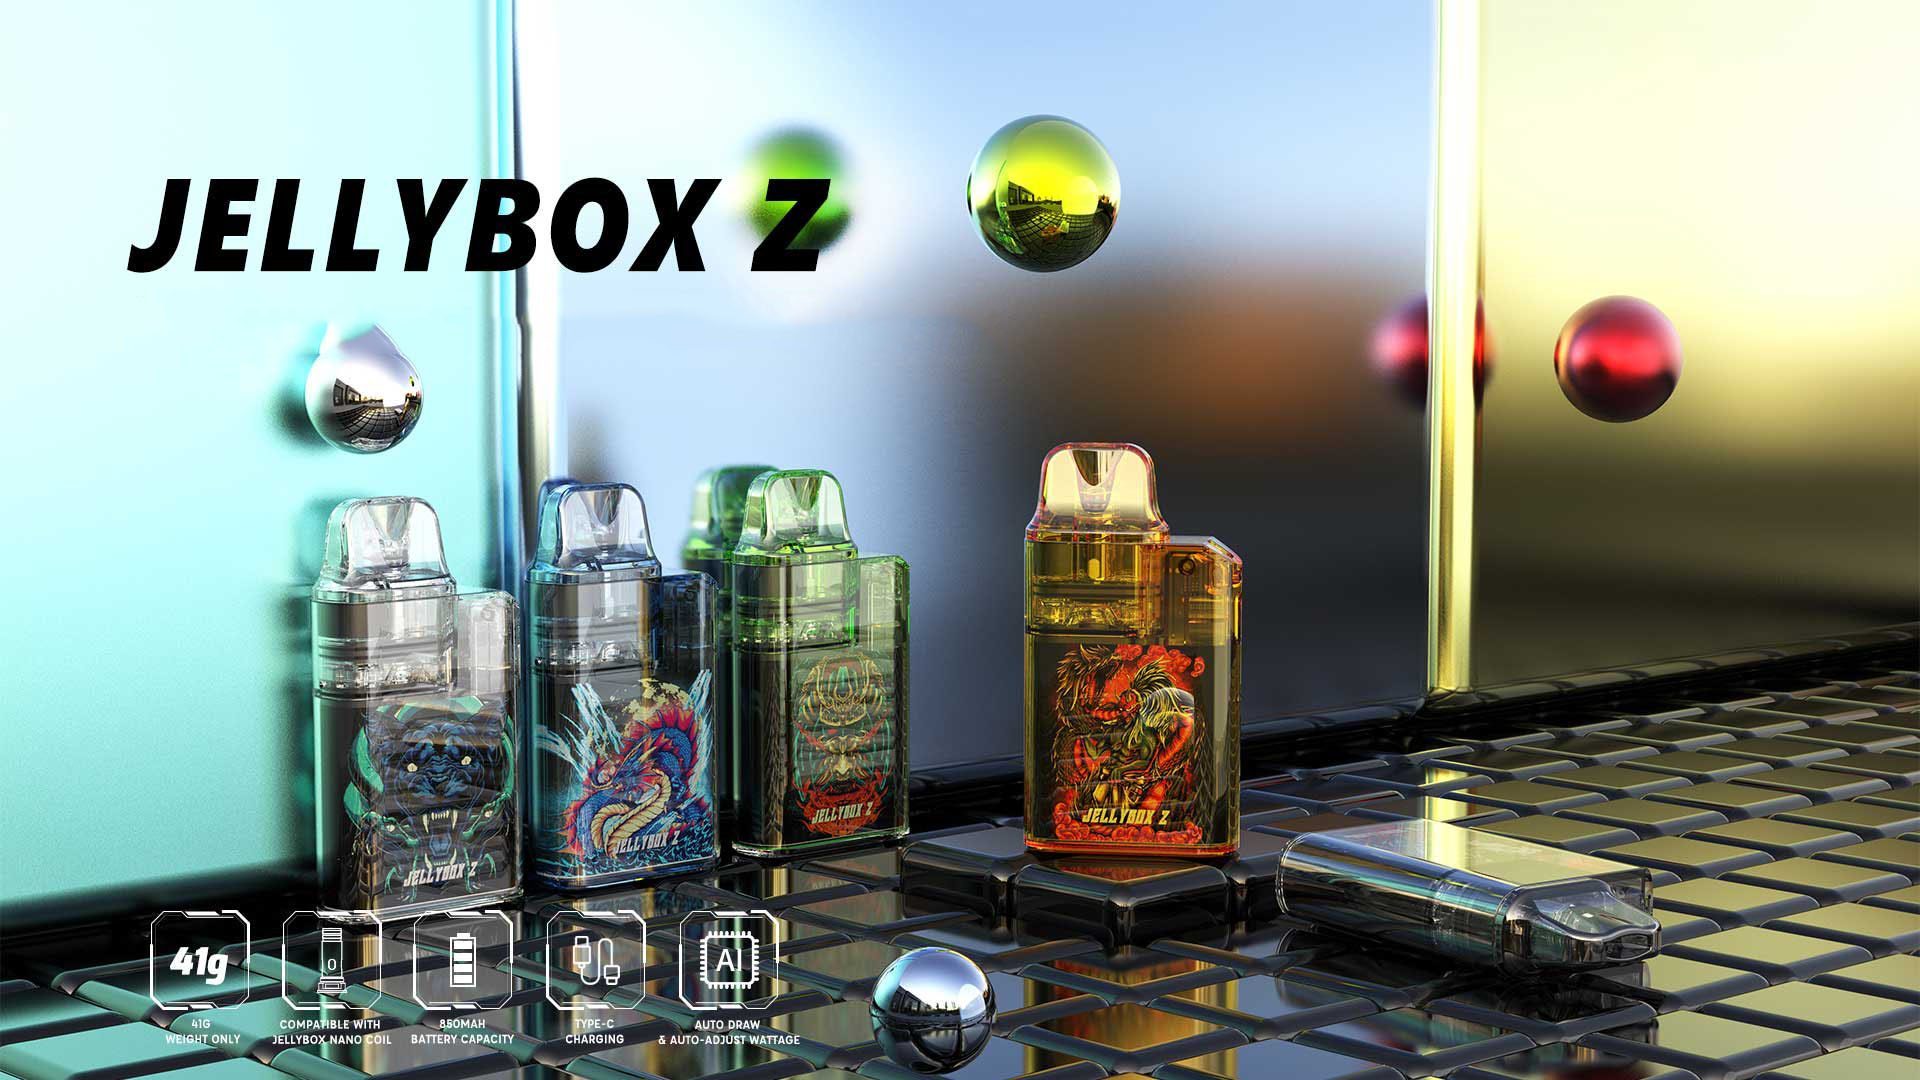 Jellybox Z